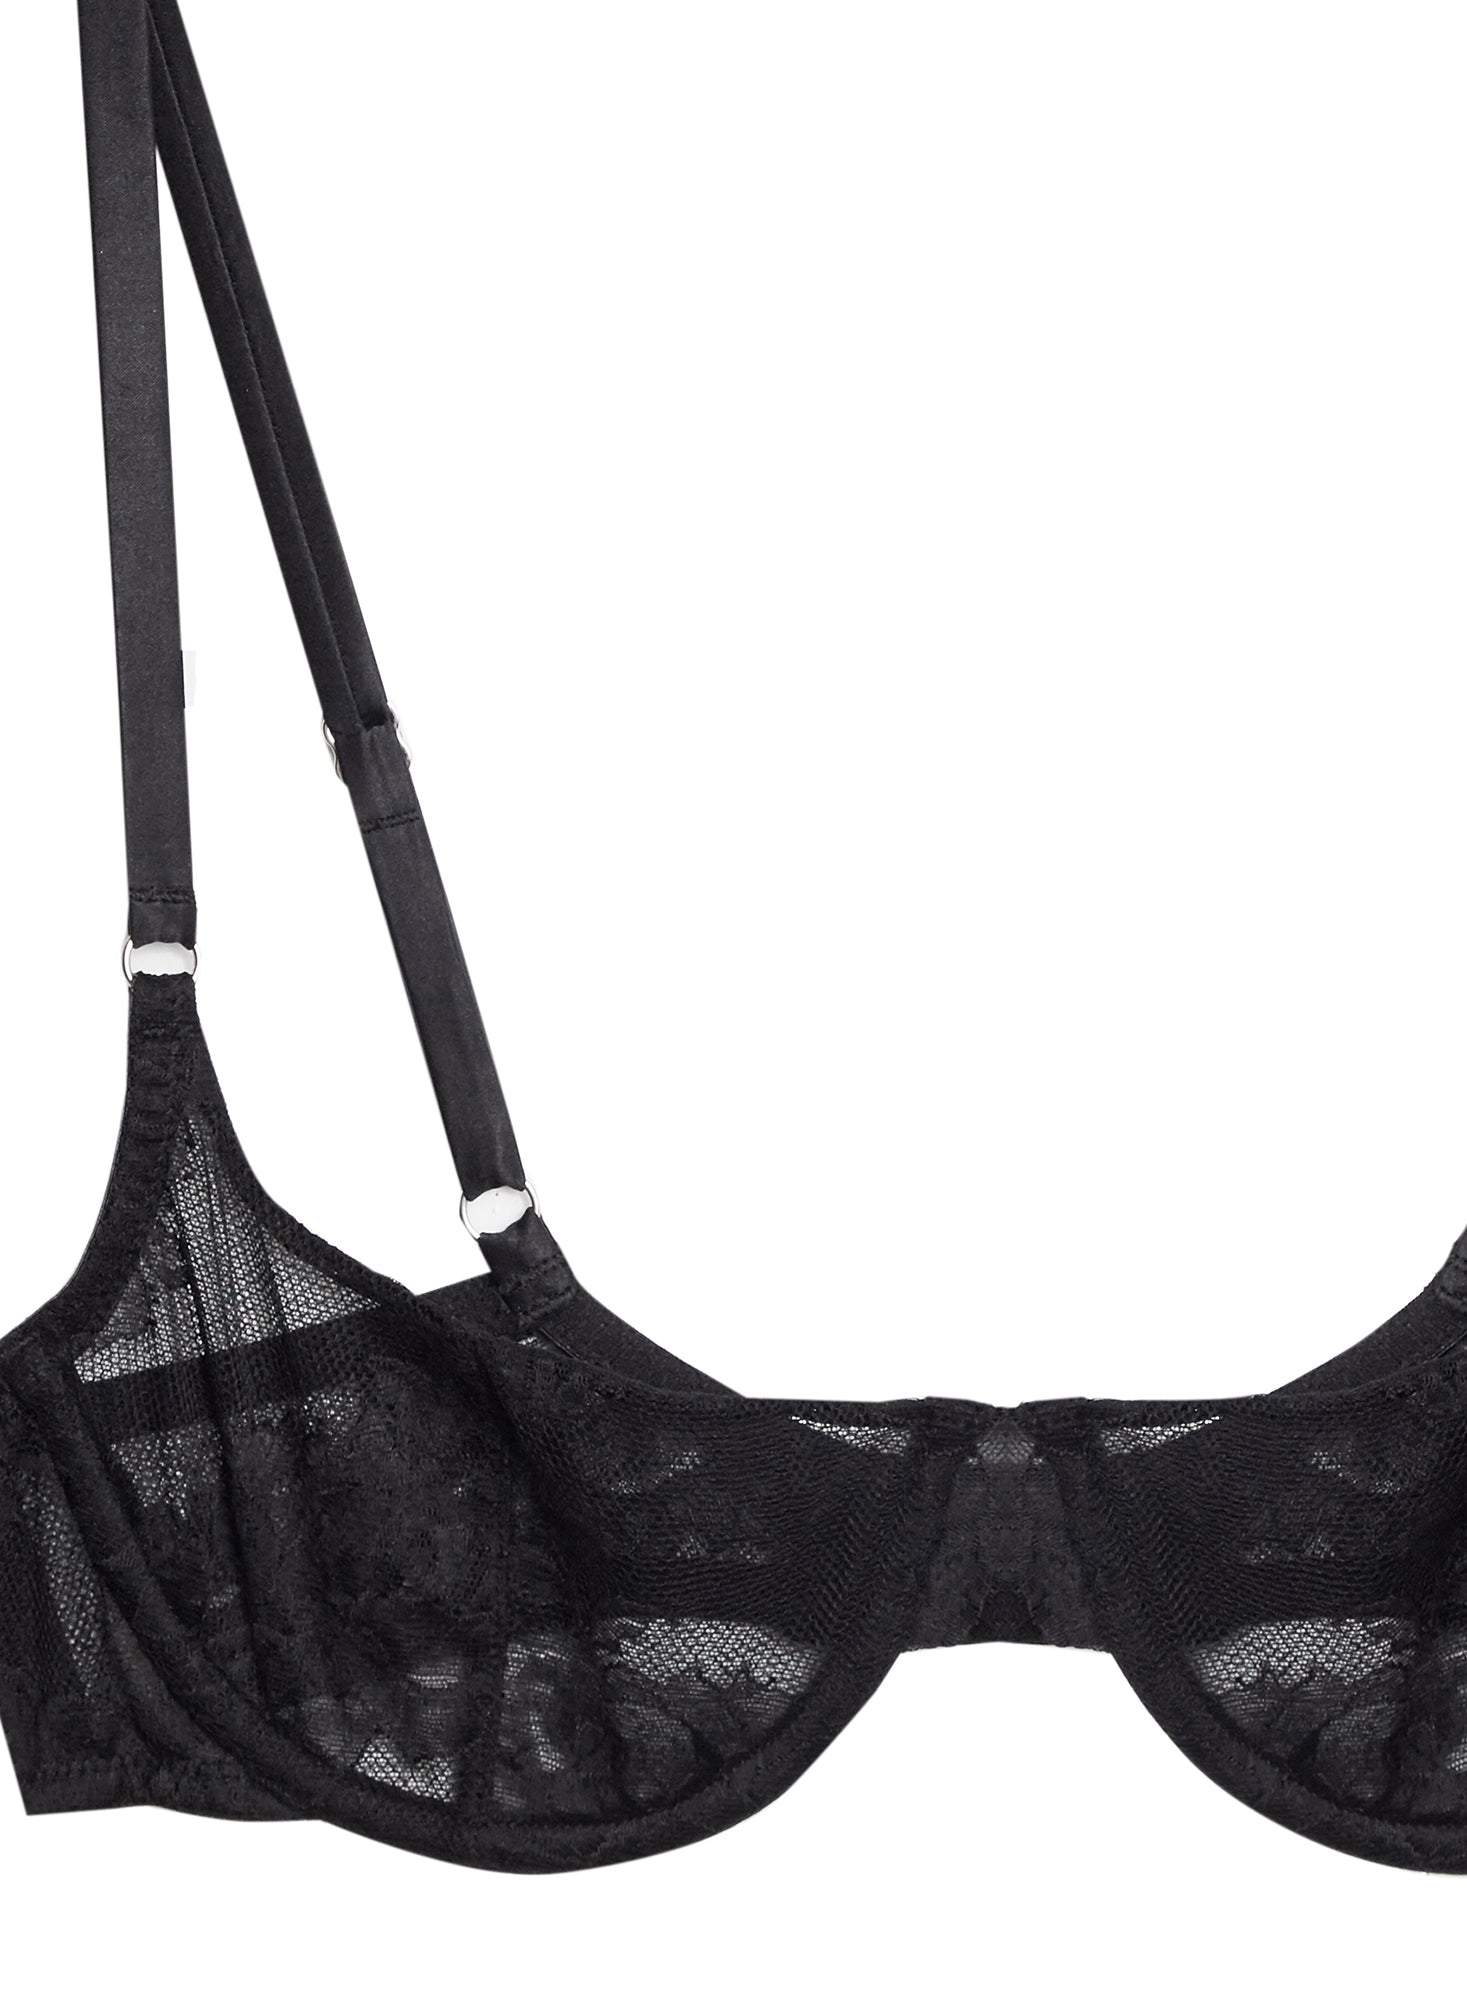 MELENECA Balconette Underwire Sexy Lace Bra for Women Black 34F